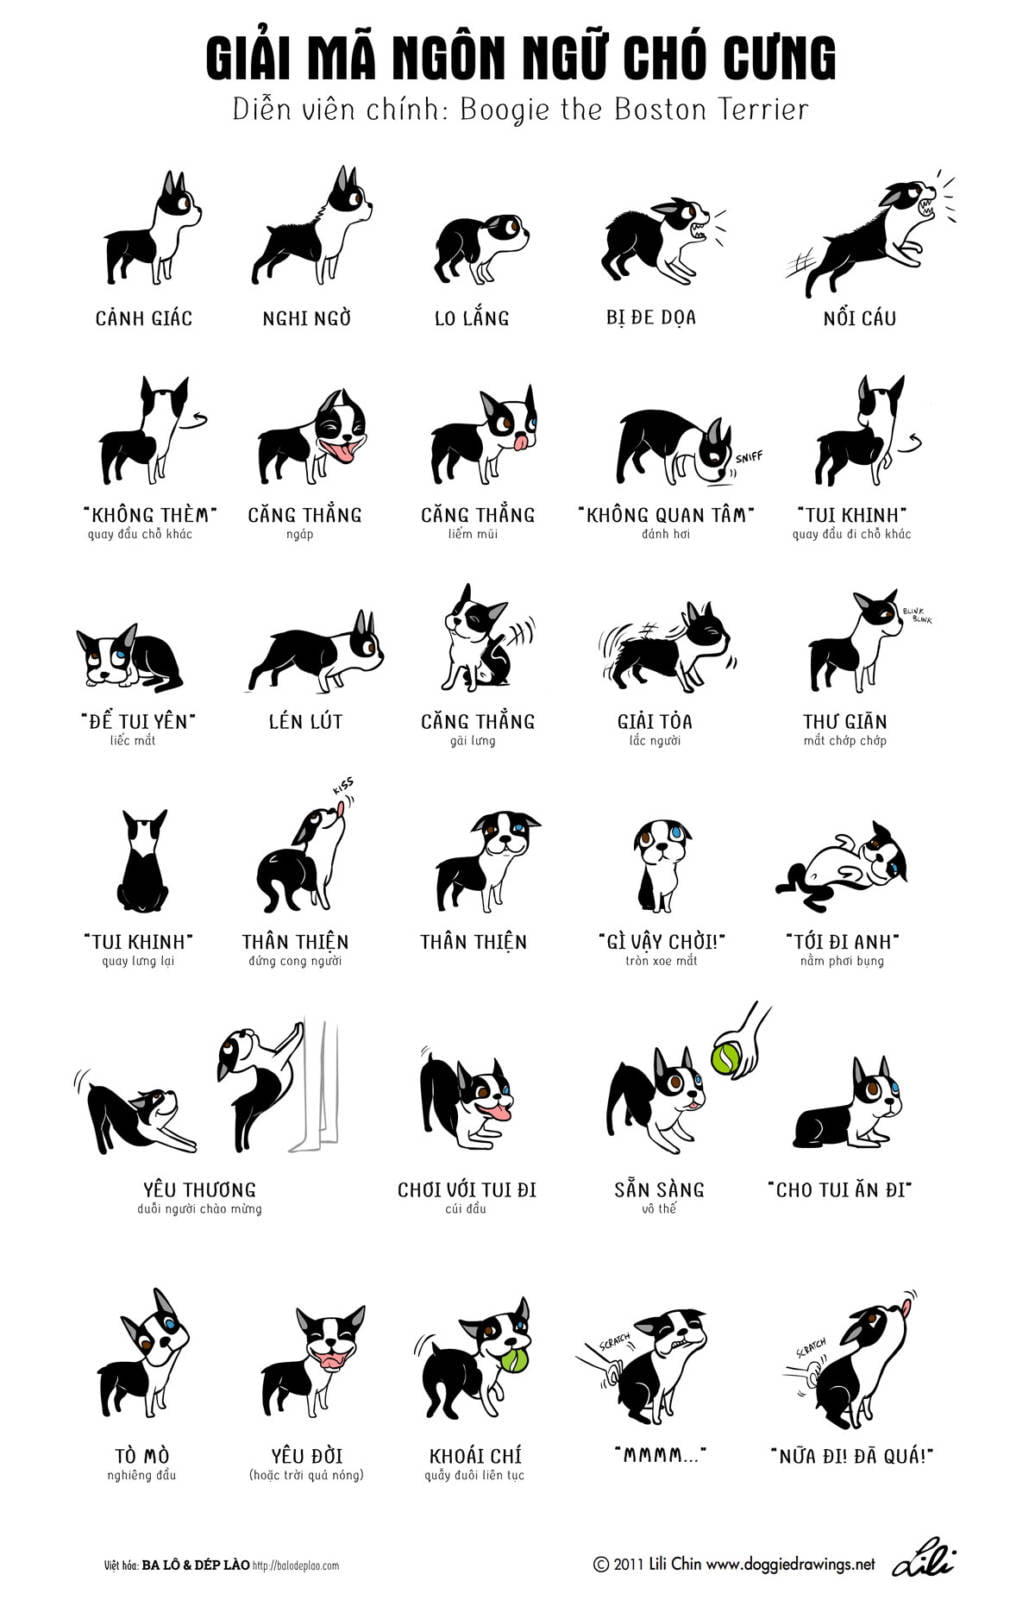 [Infographic] Giải mã ngôn ngữ chó cưng